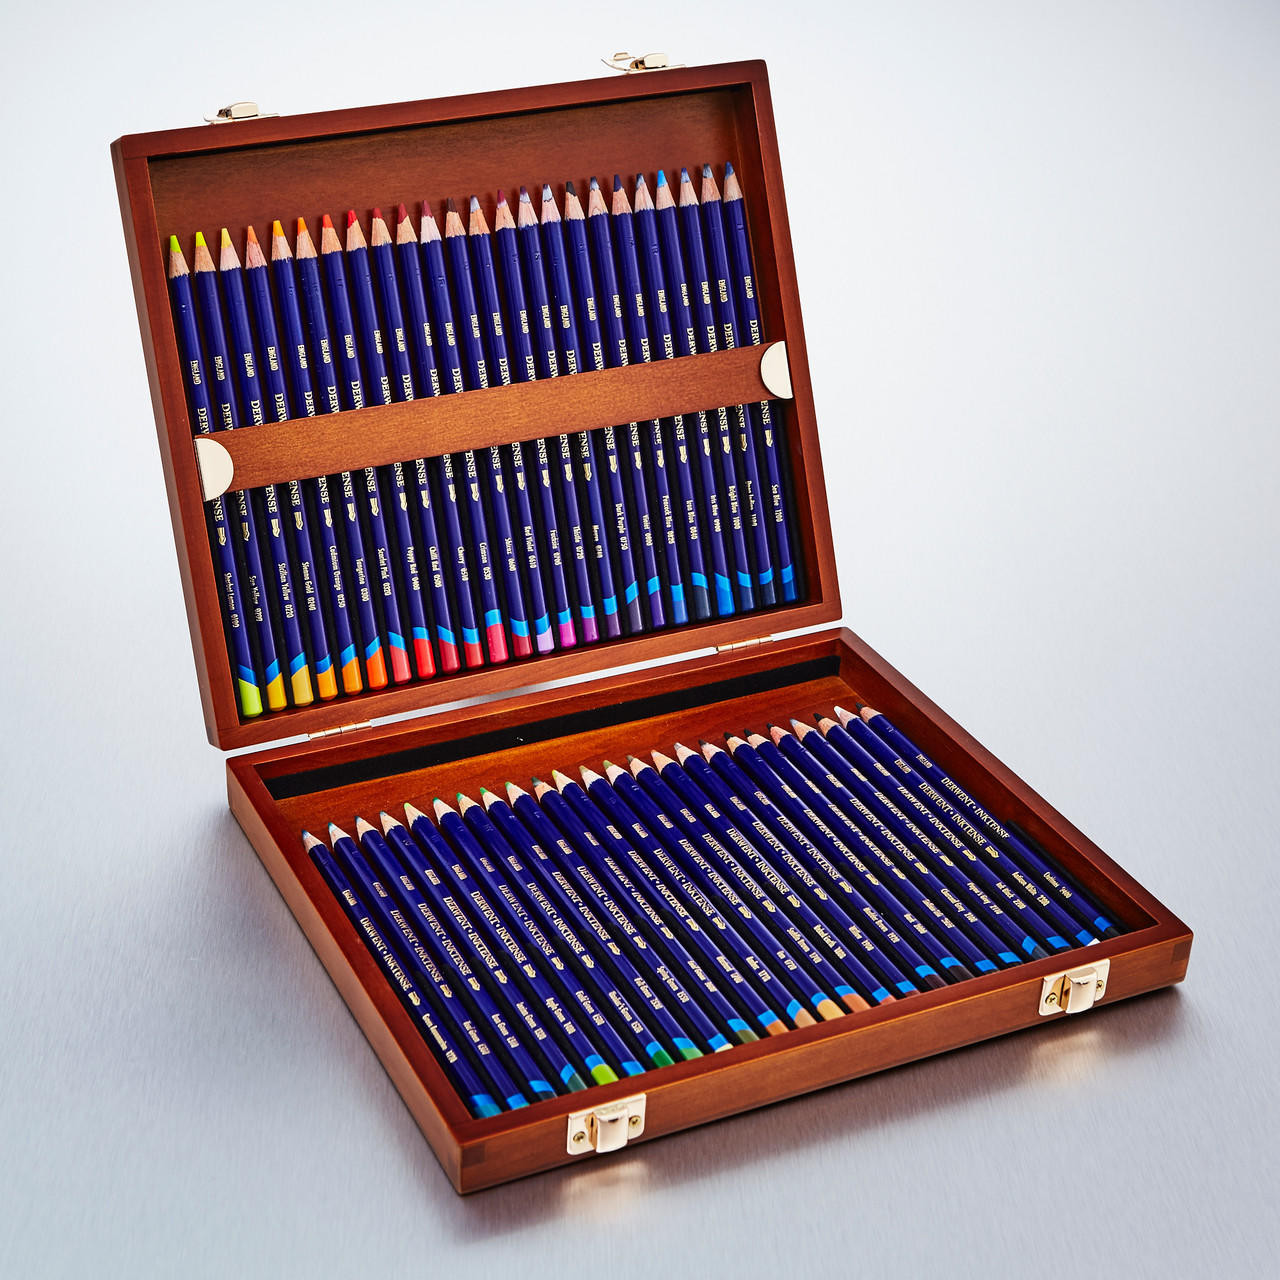 Derwent Inktense Pencils Wooden Box Set of 48